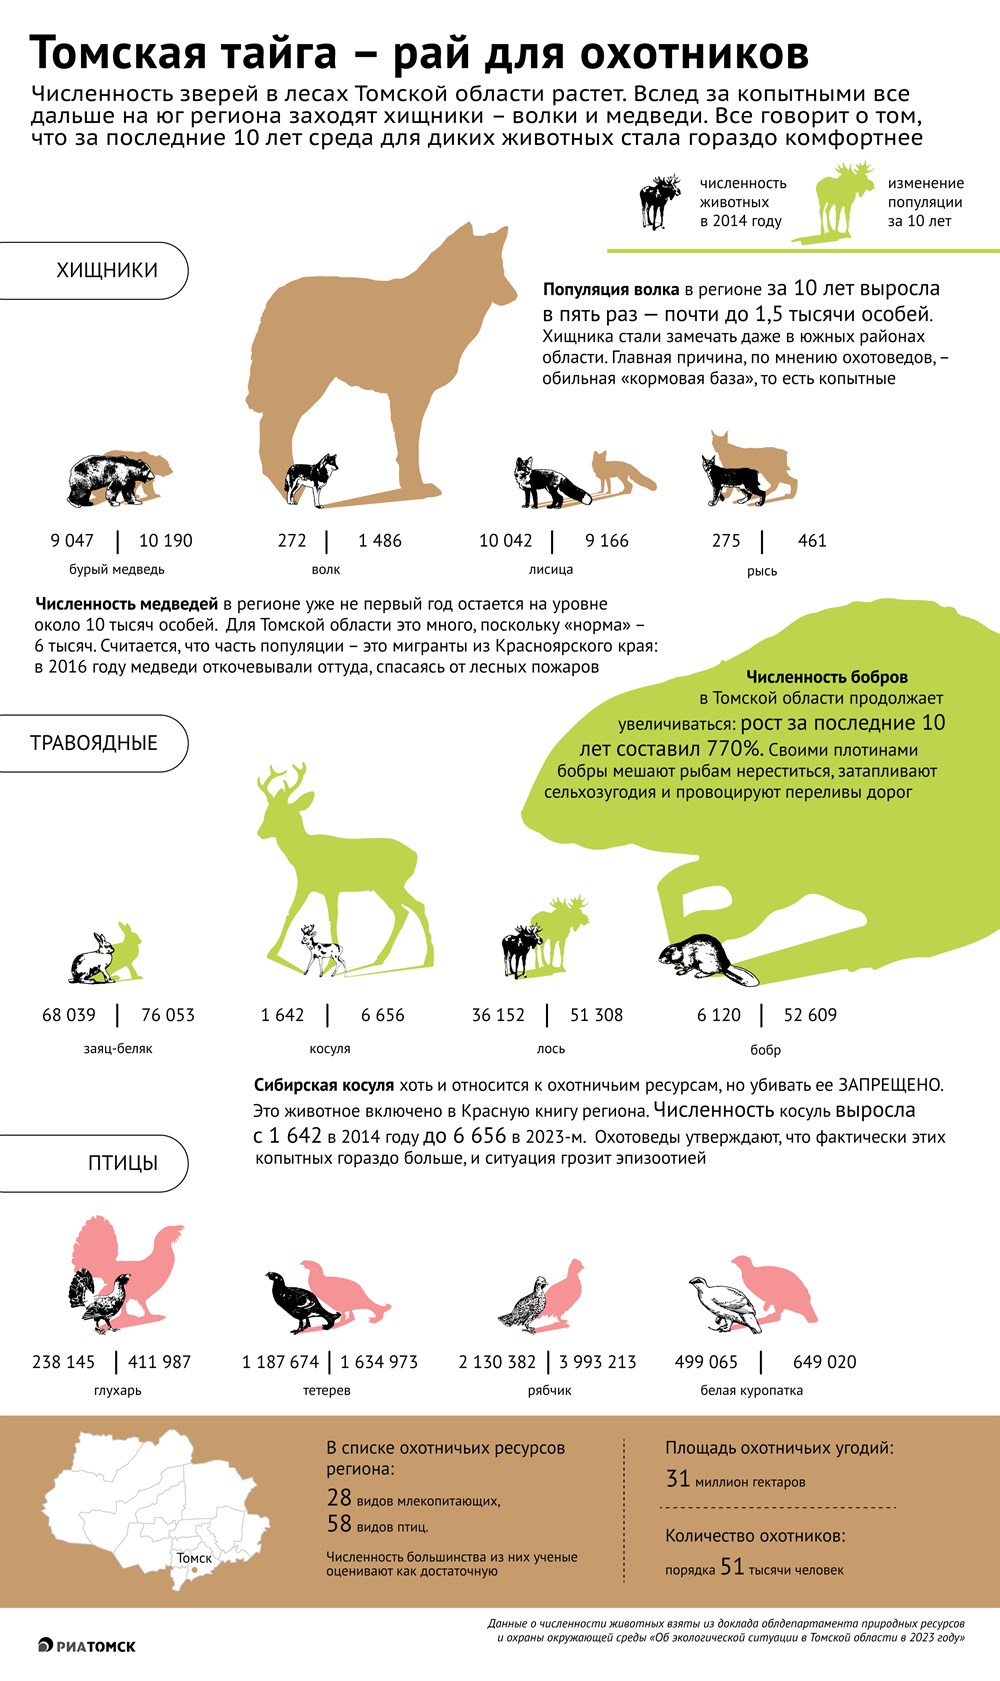 В тени бобра: как выросла численность диких зверей в томских лесах